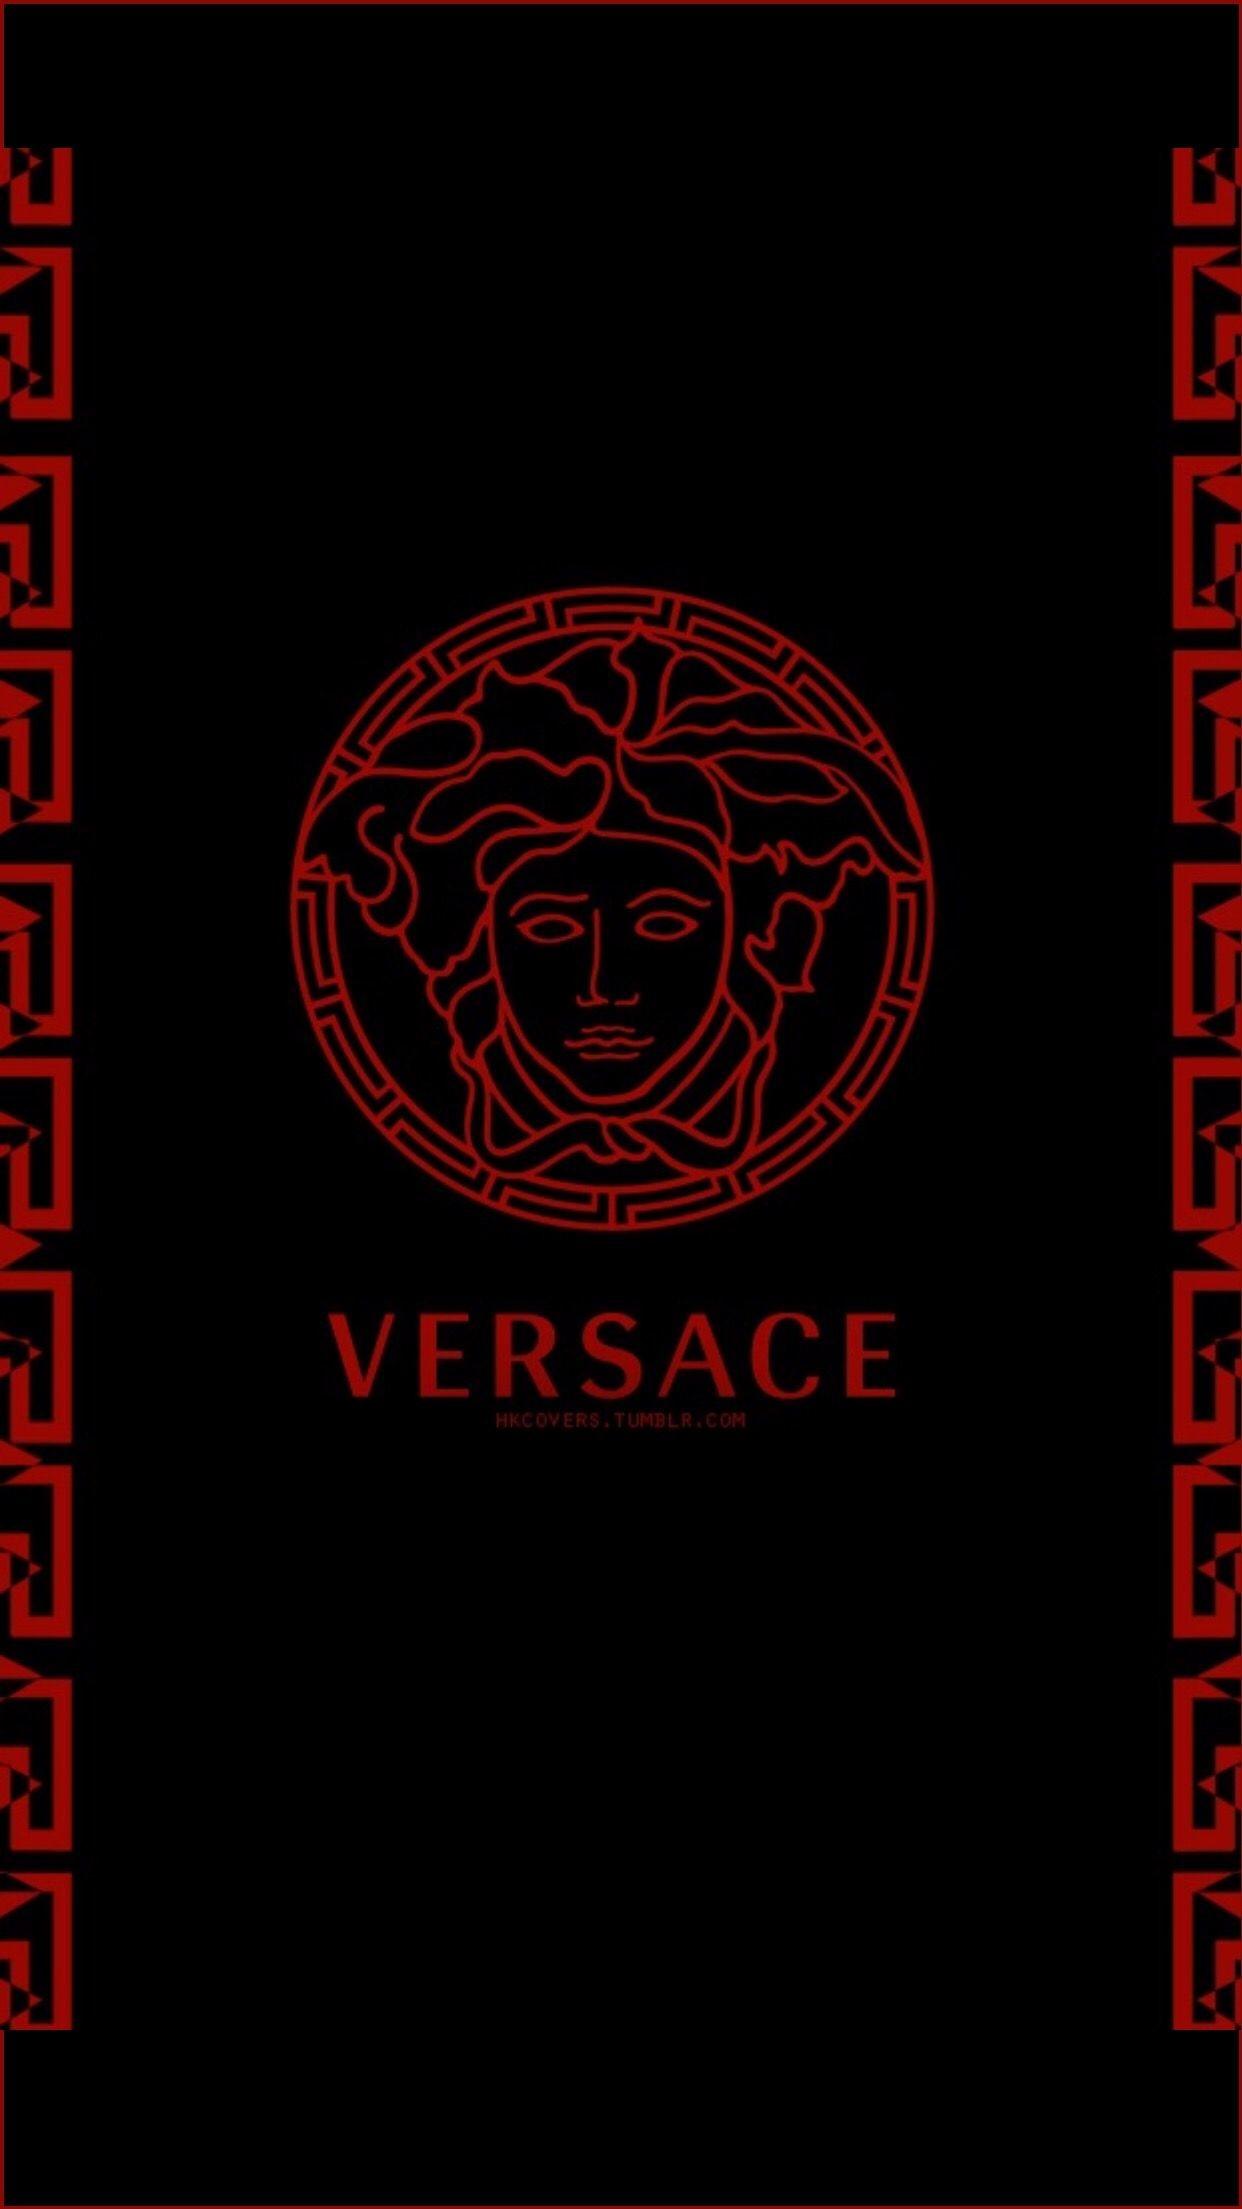 Versace iPhone Wallpaper